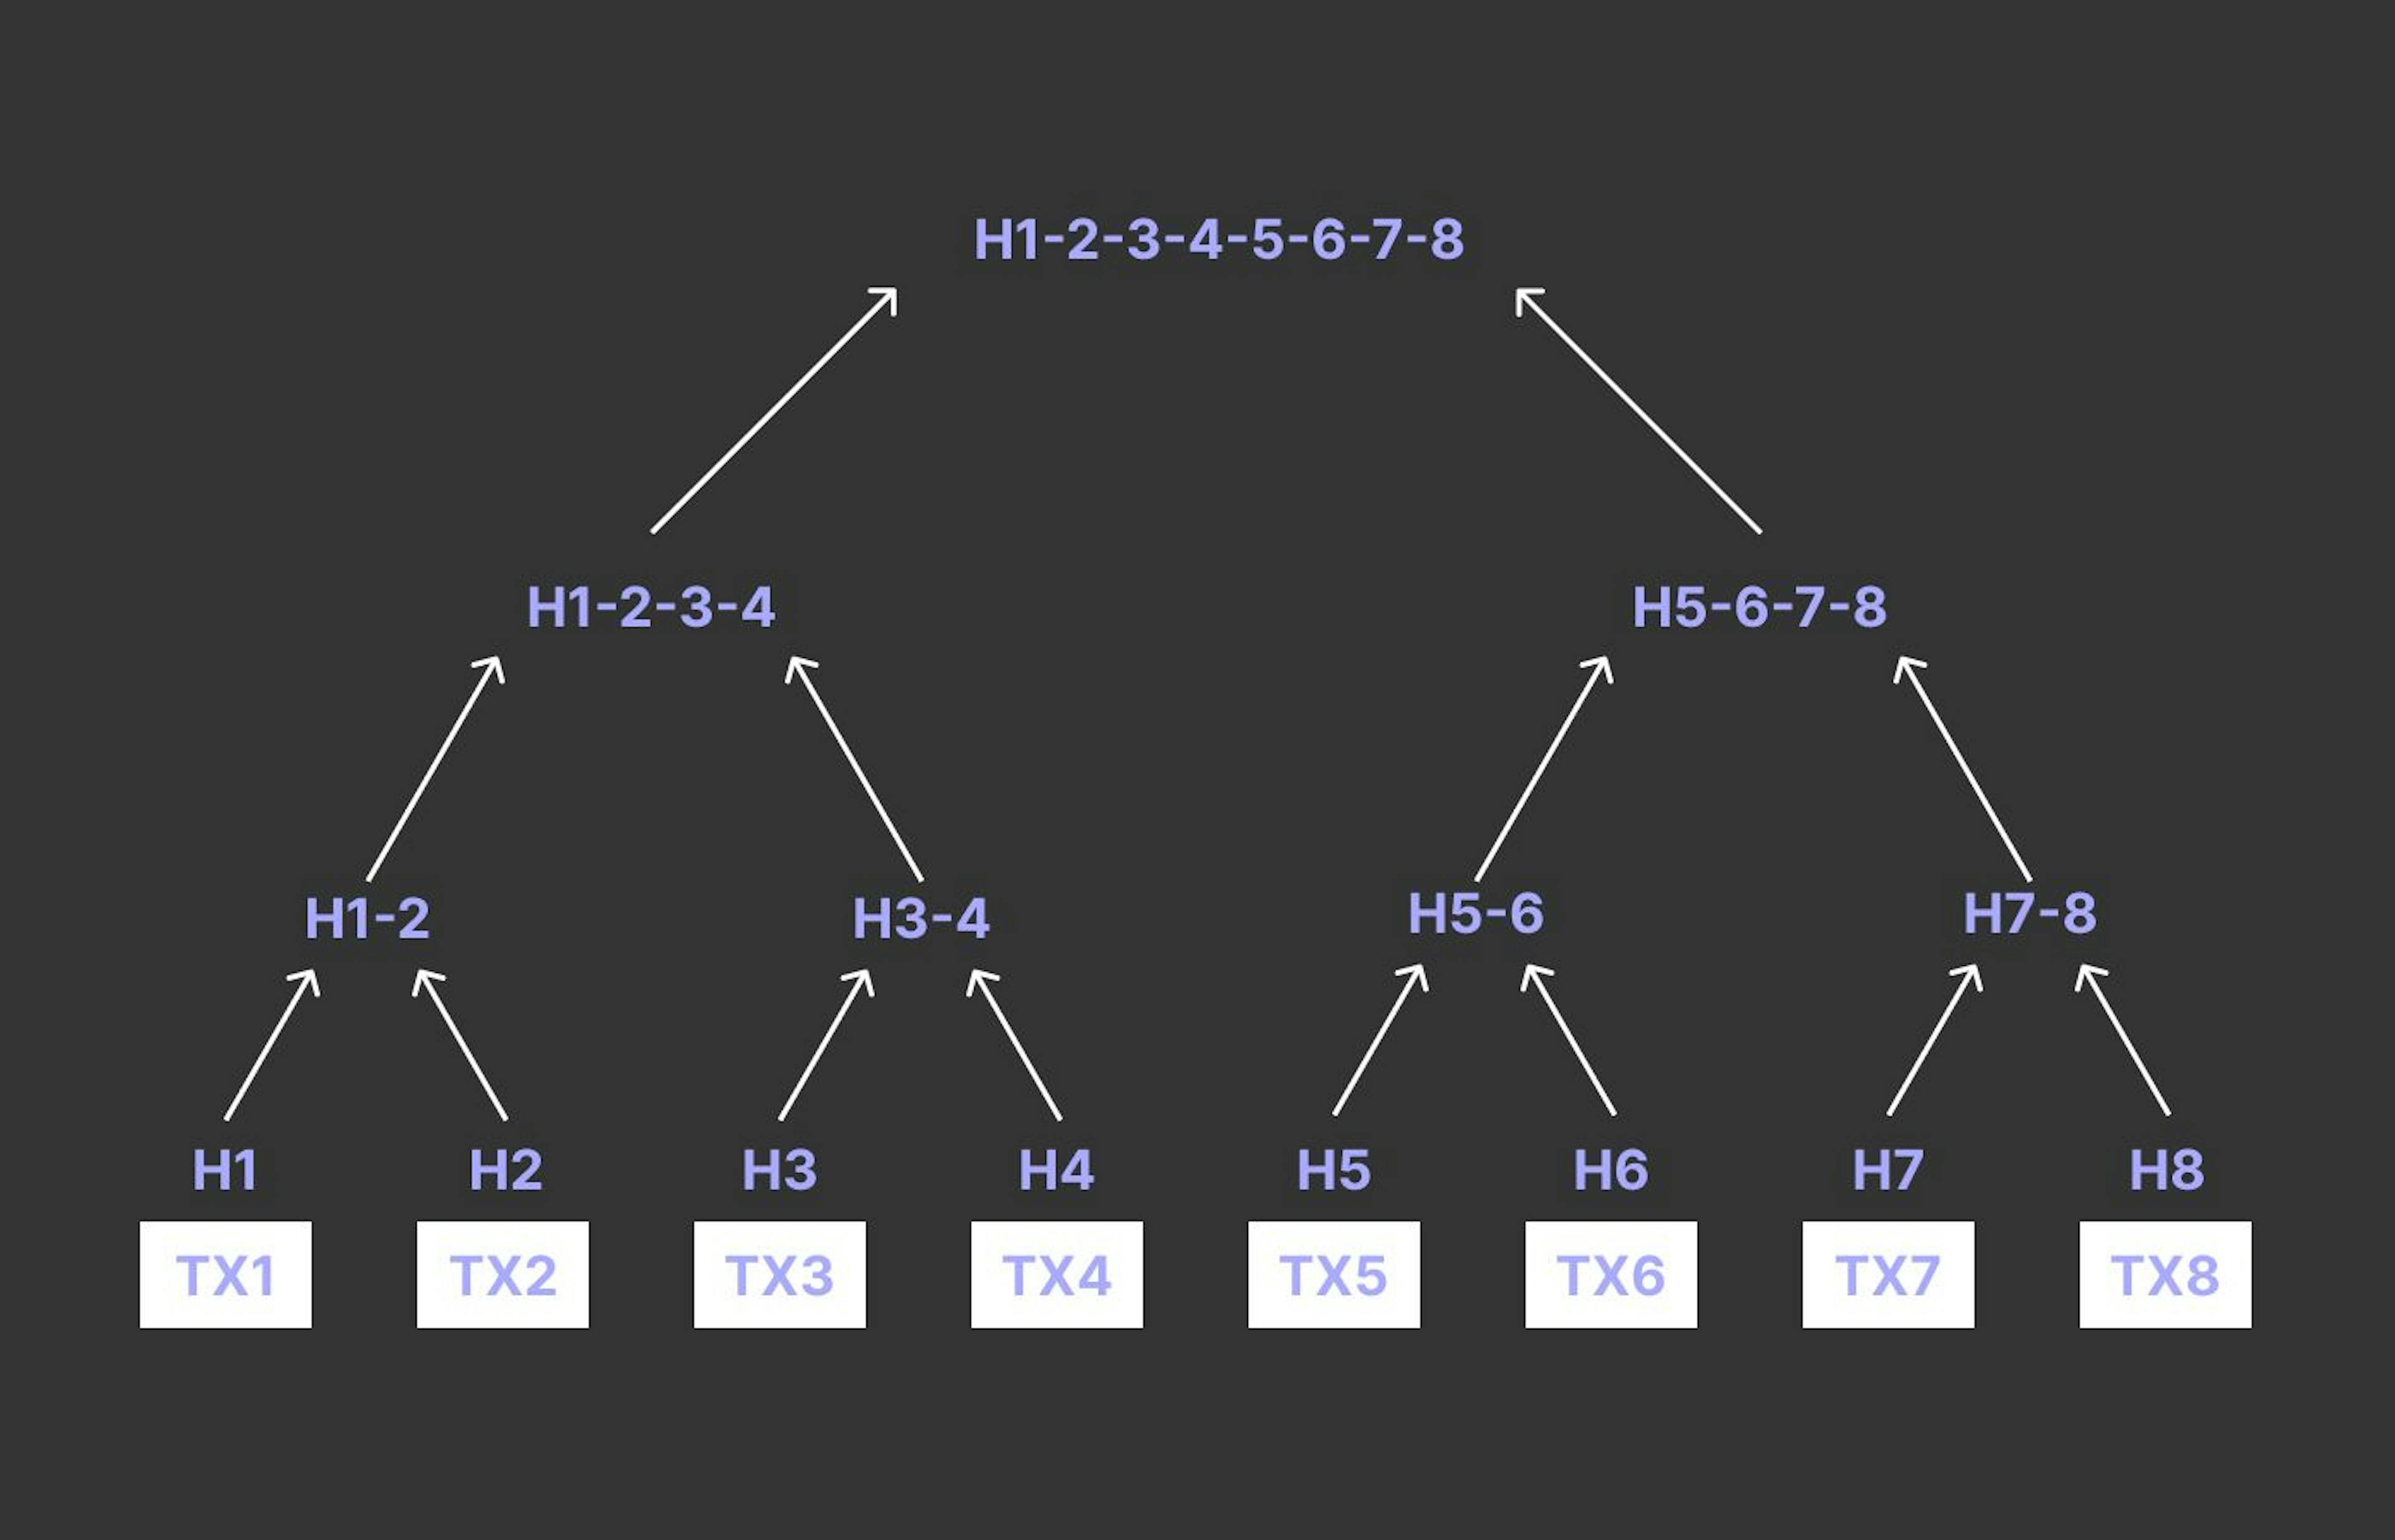 Merkle Tree based on transactions